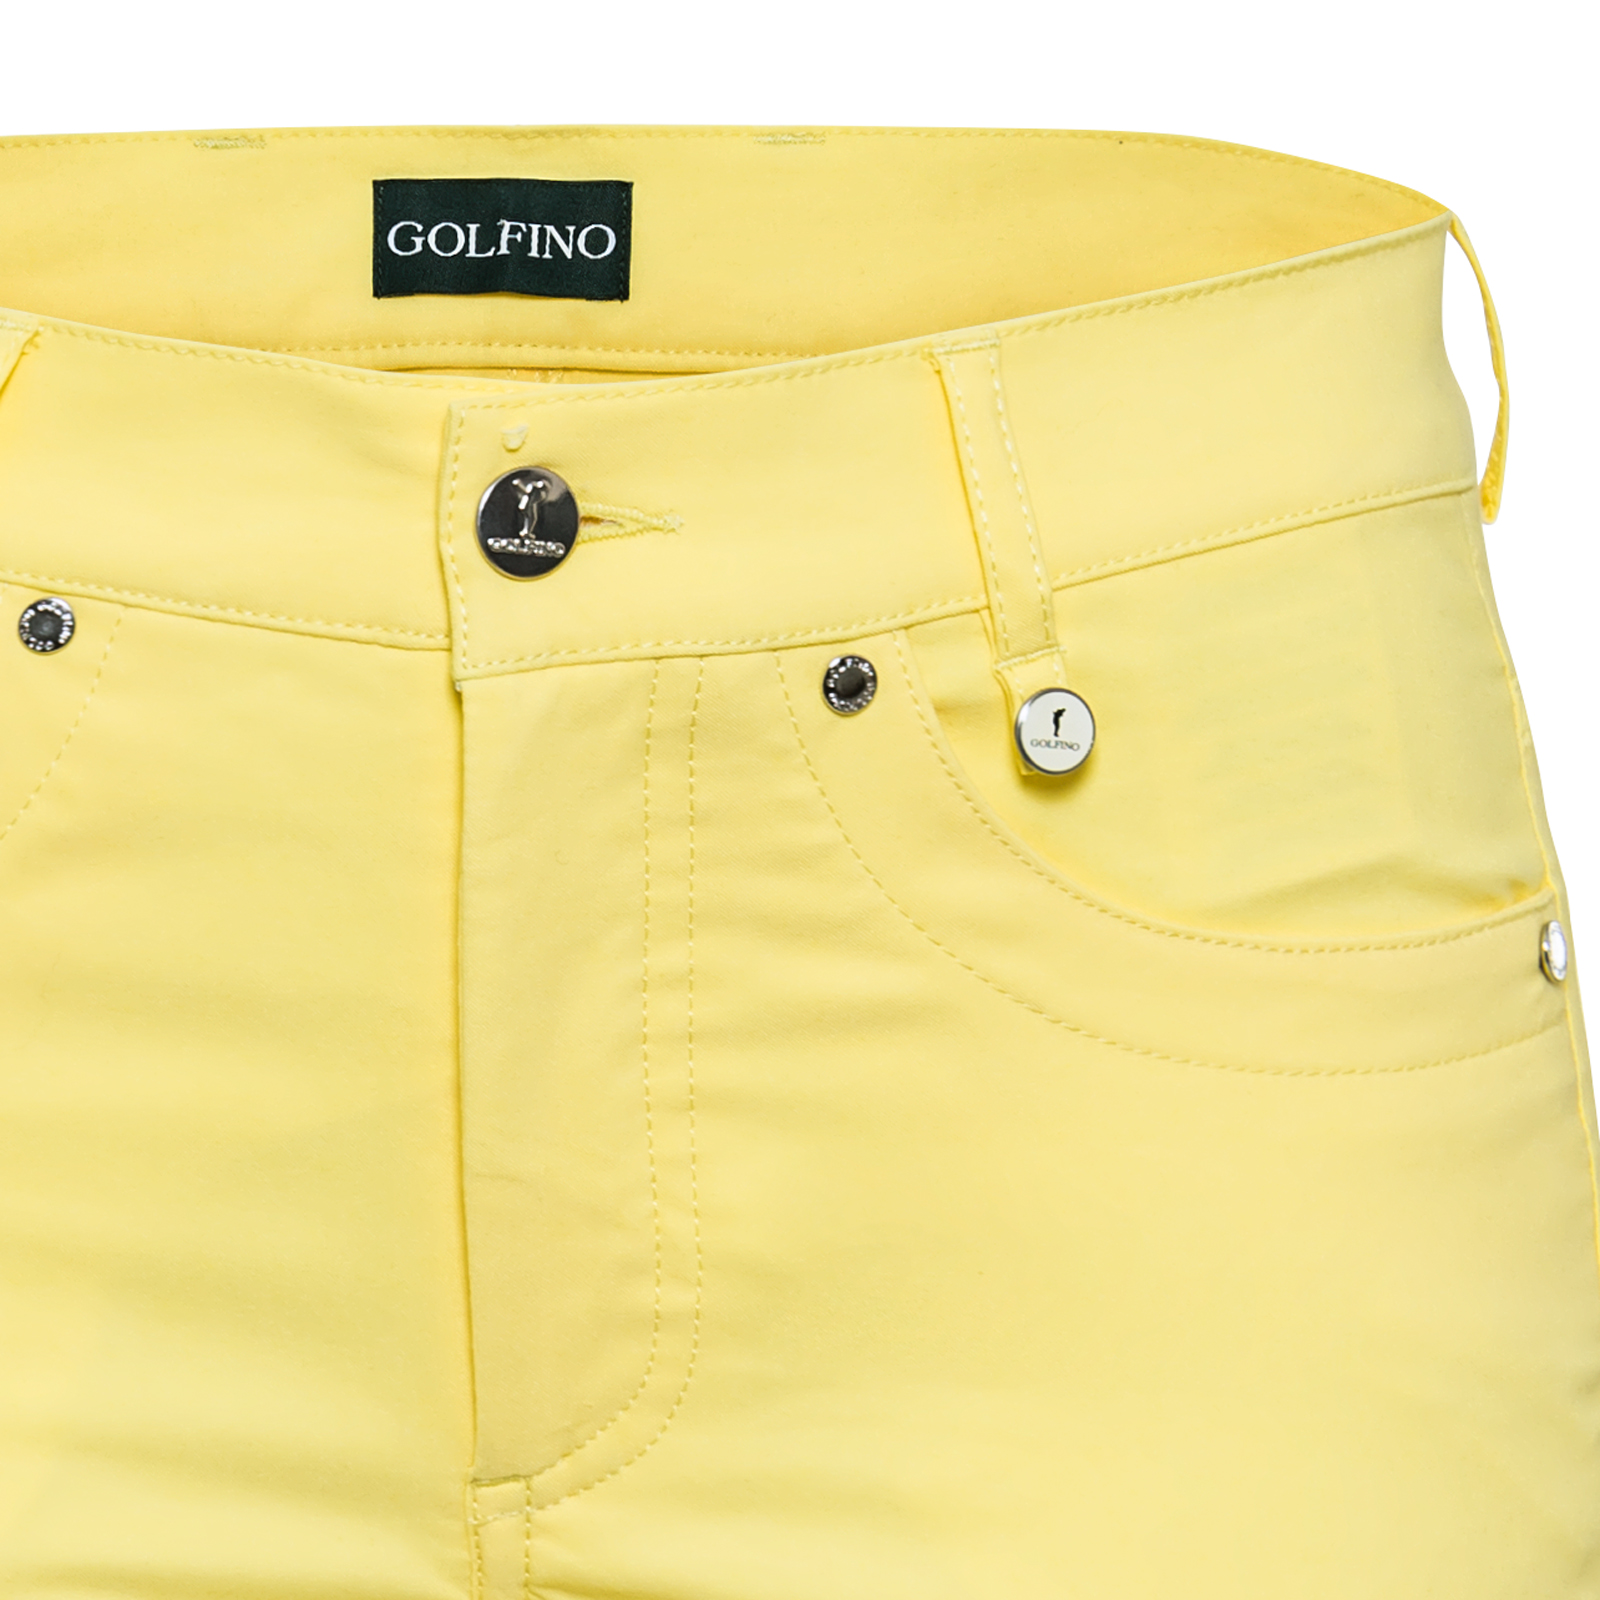 Damen 7/8-Hose im 5-Pocket-Stil aus Stretch-Material mit Sonnenschutz-Funktion